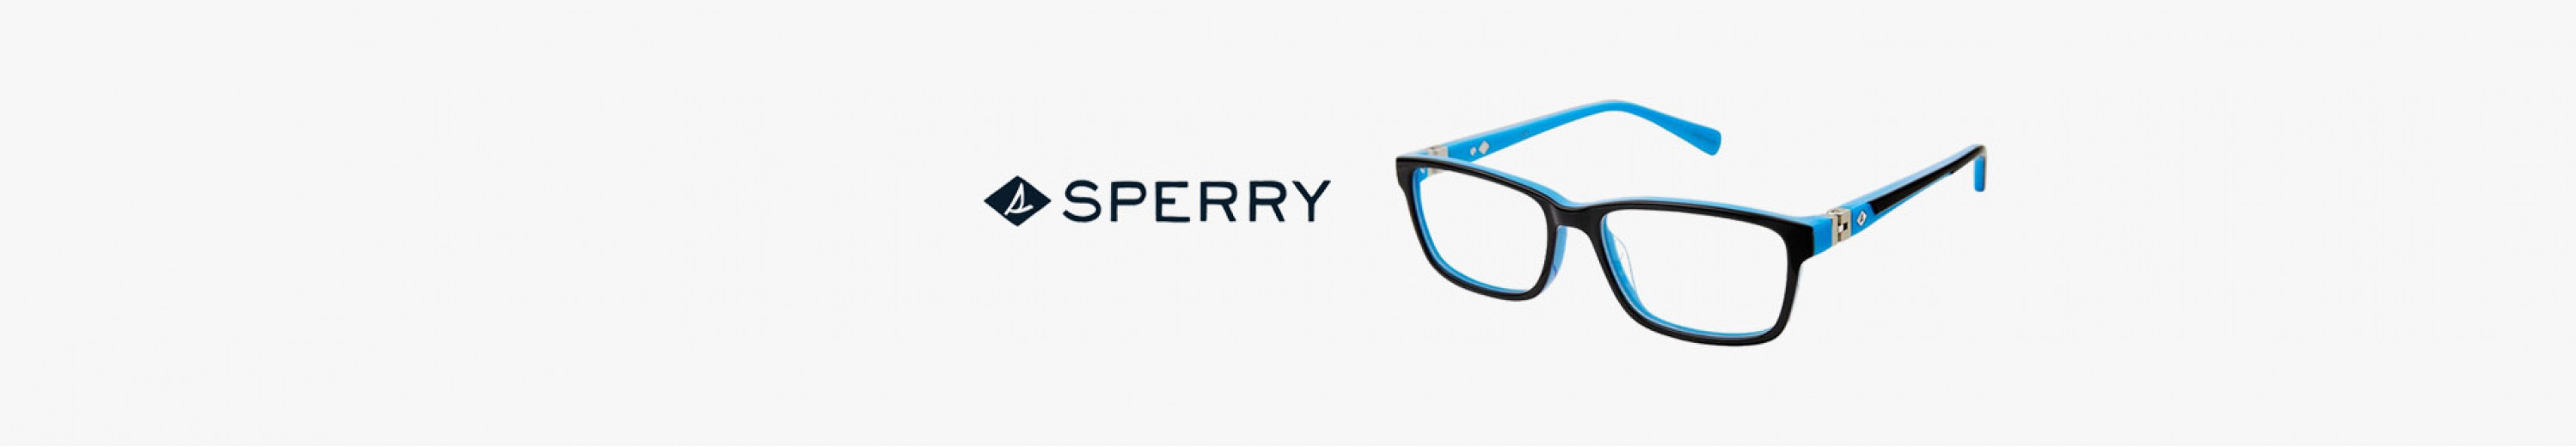 Sperry Eyeglasses for Kids